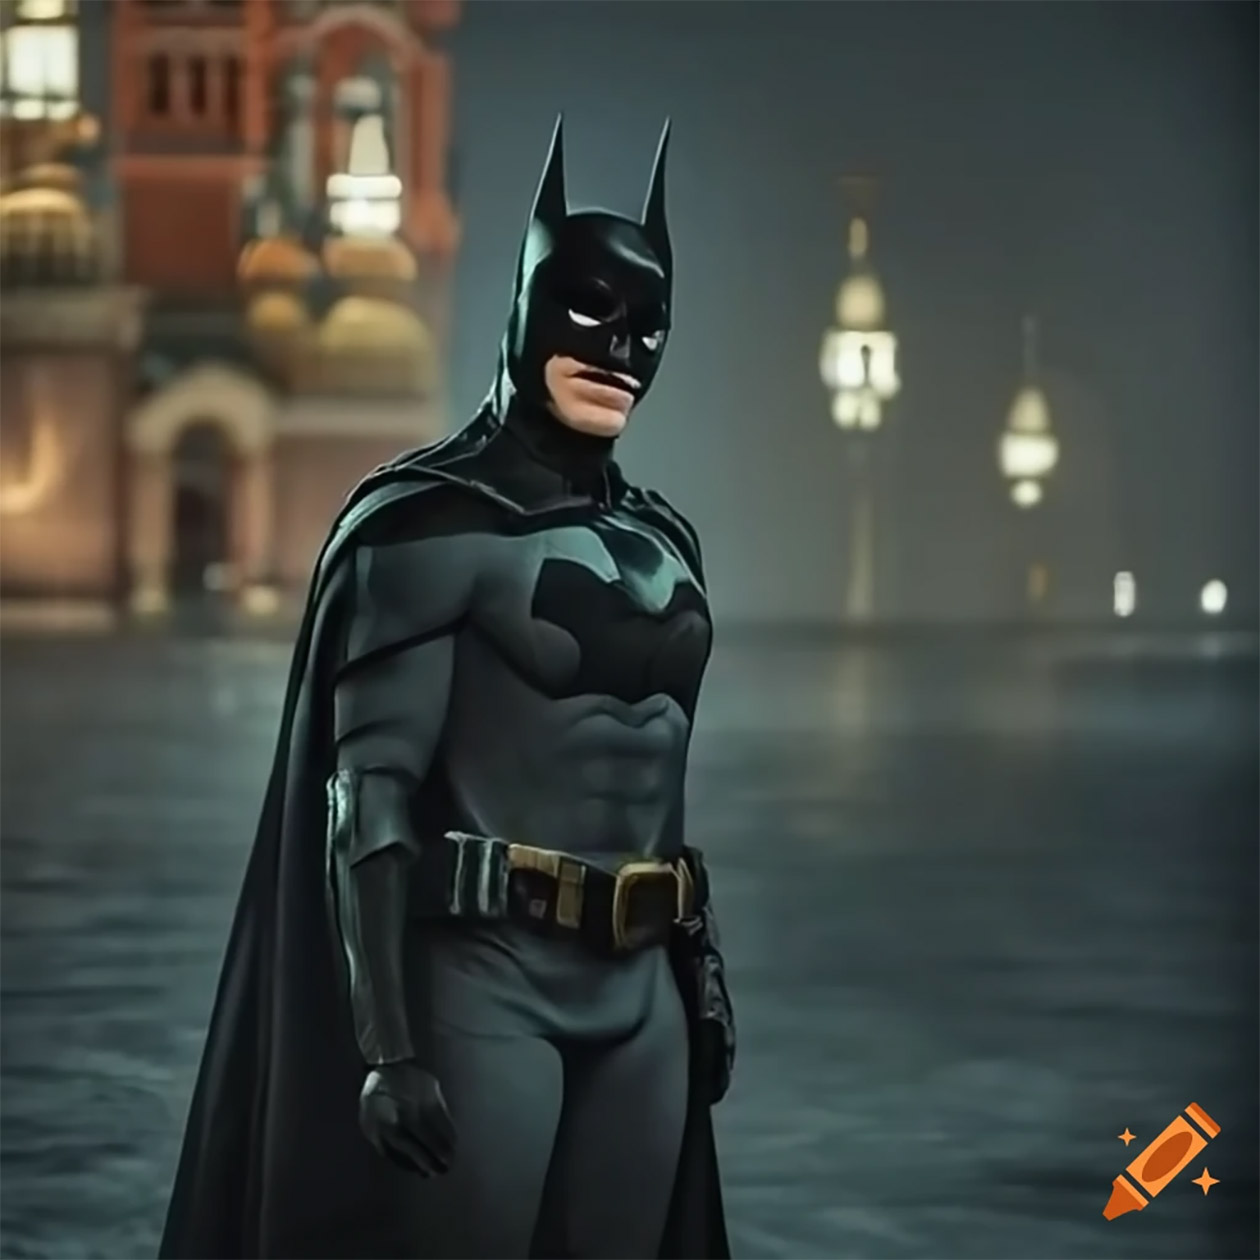 Бэтмен и Москва не удались, зато прилагалась масса идей с Бэтменом, поедающим бургер, убегающим с чемоданом и в других непривычных ситуациях